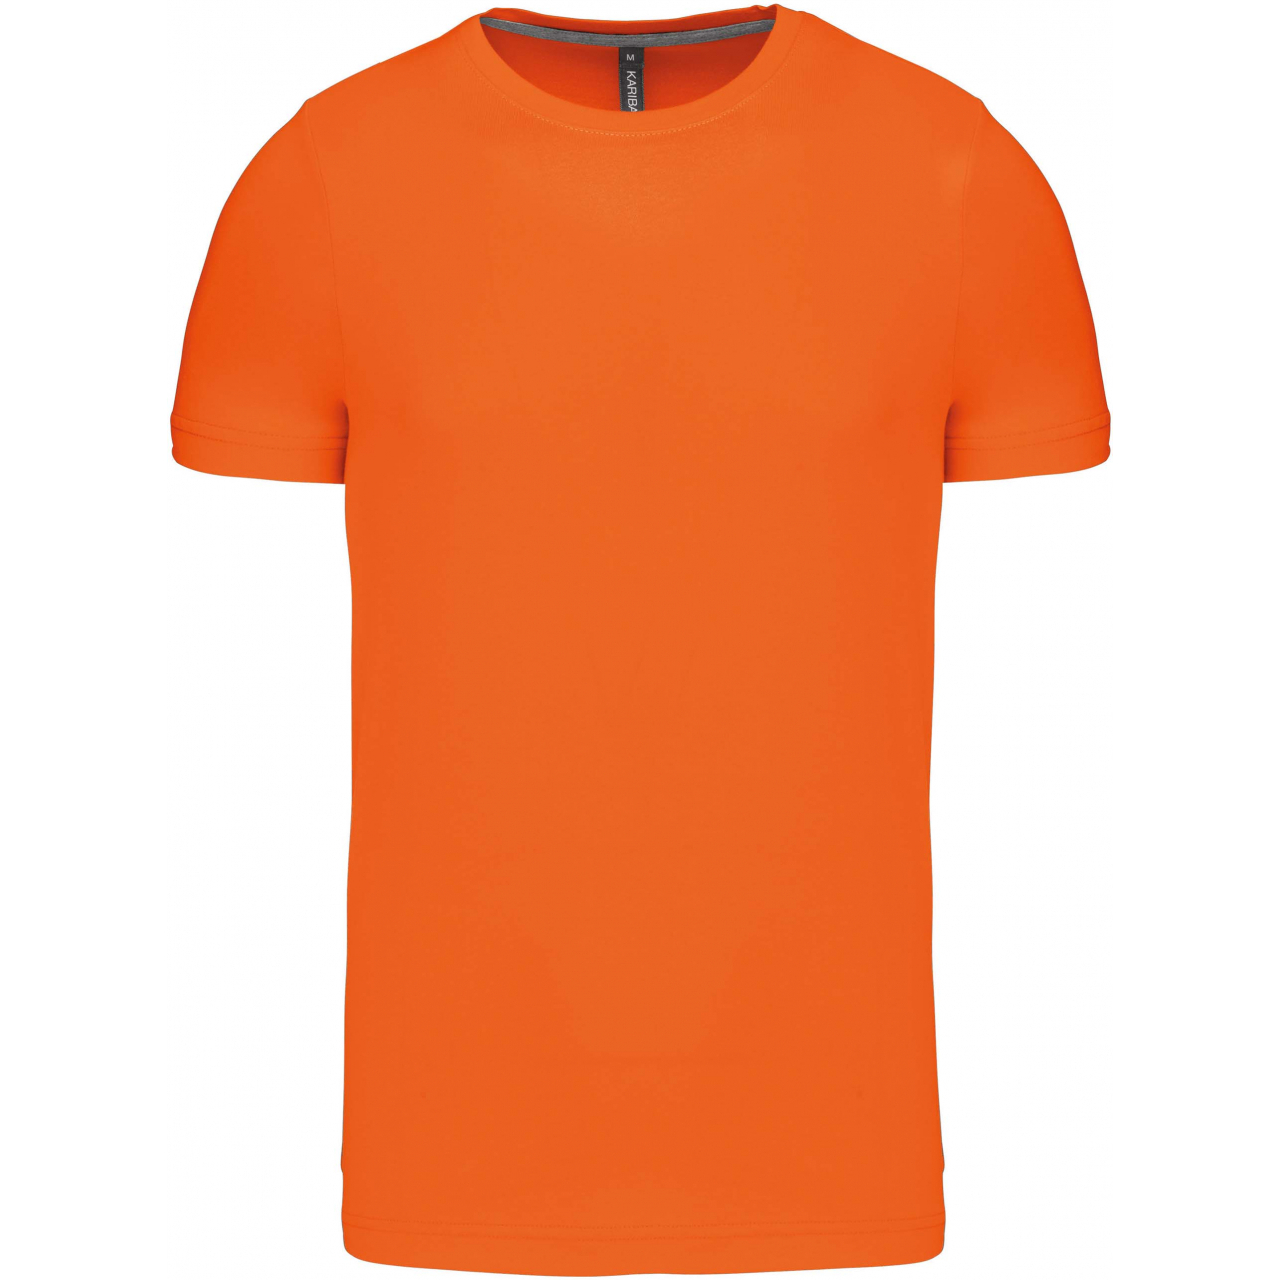 Pánské tričko Kariban krátký rukáv - oranžové, M